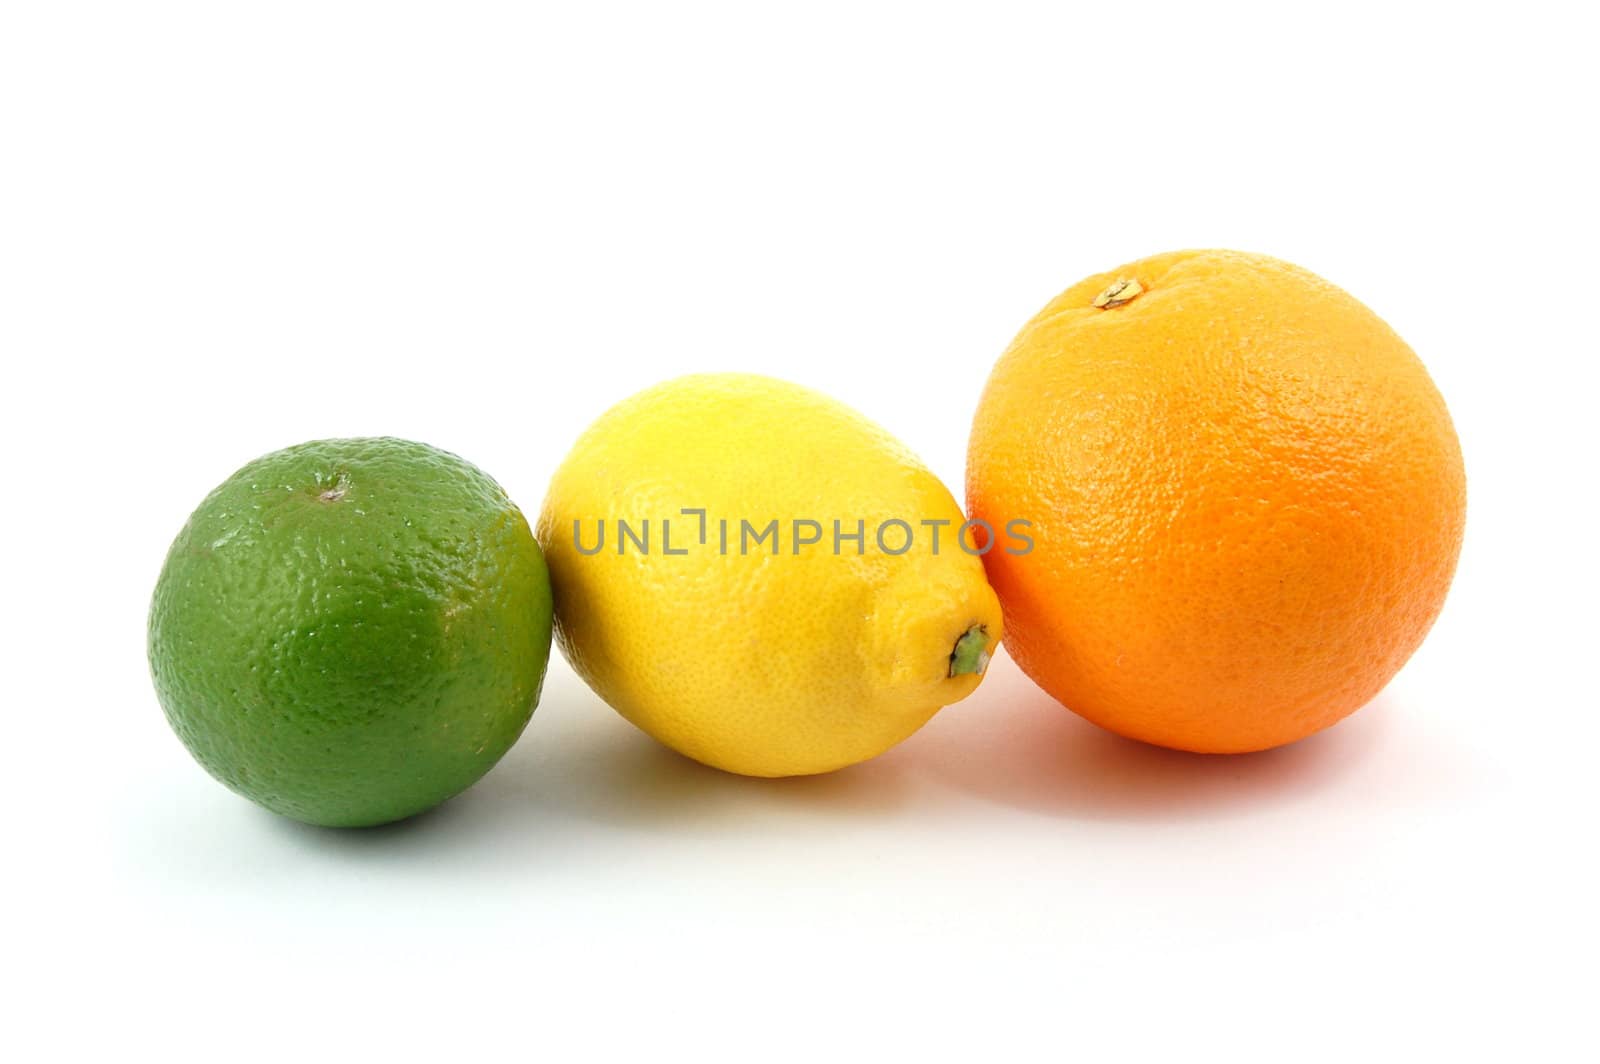 fresh lemon , orange , and citron fruits isolated on a white background